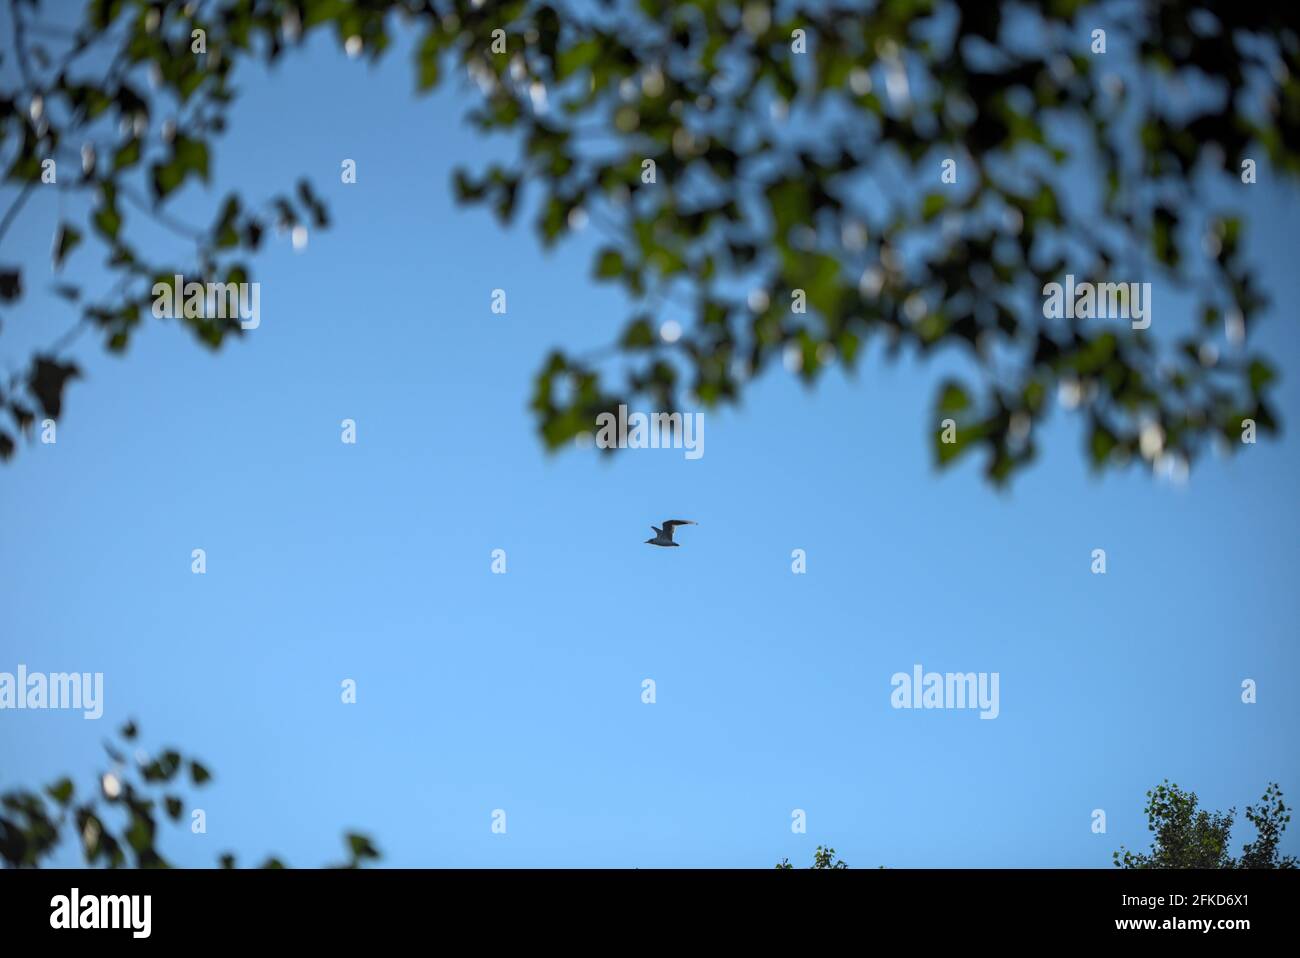 Allaine fliegende Möwe grüne Bäume Baum blauer Himmel ohne Wolken Foto Stock